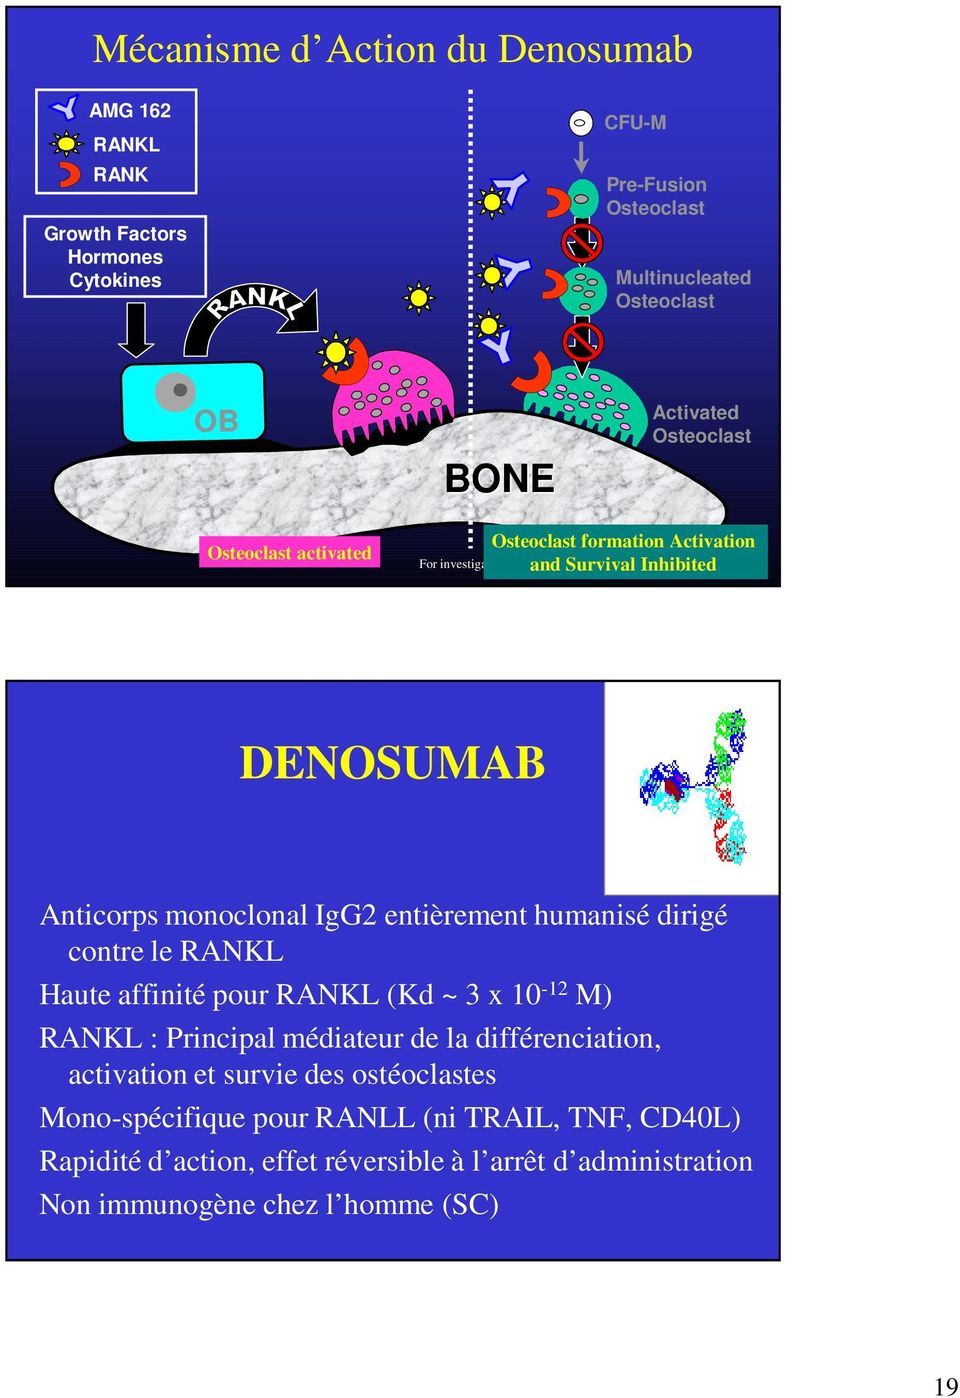 Amgen 2005 DENOSUMAB Anticorps monoclonal IgG2 entièrement humanisé dirigé contre le RANKL Haute affinité pour RANKL (Kd ~ 3 x 10-12 M) RANKL : Principal médiateur de